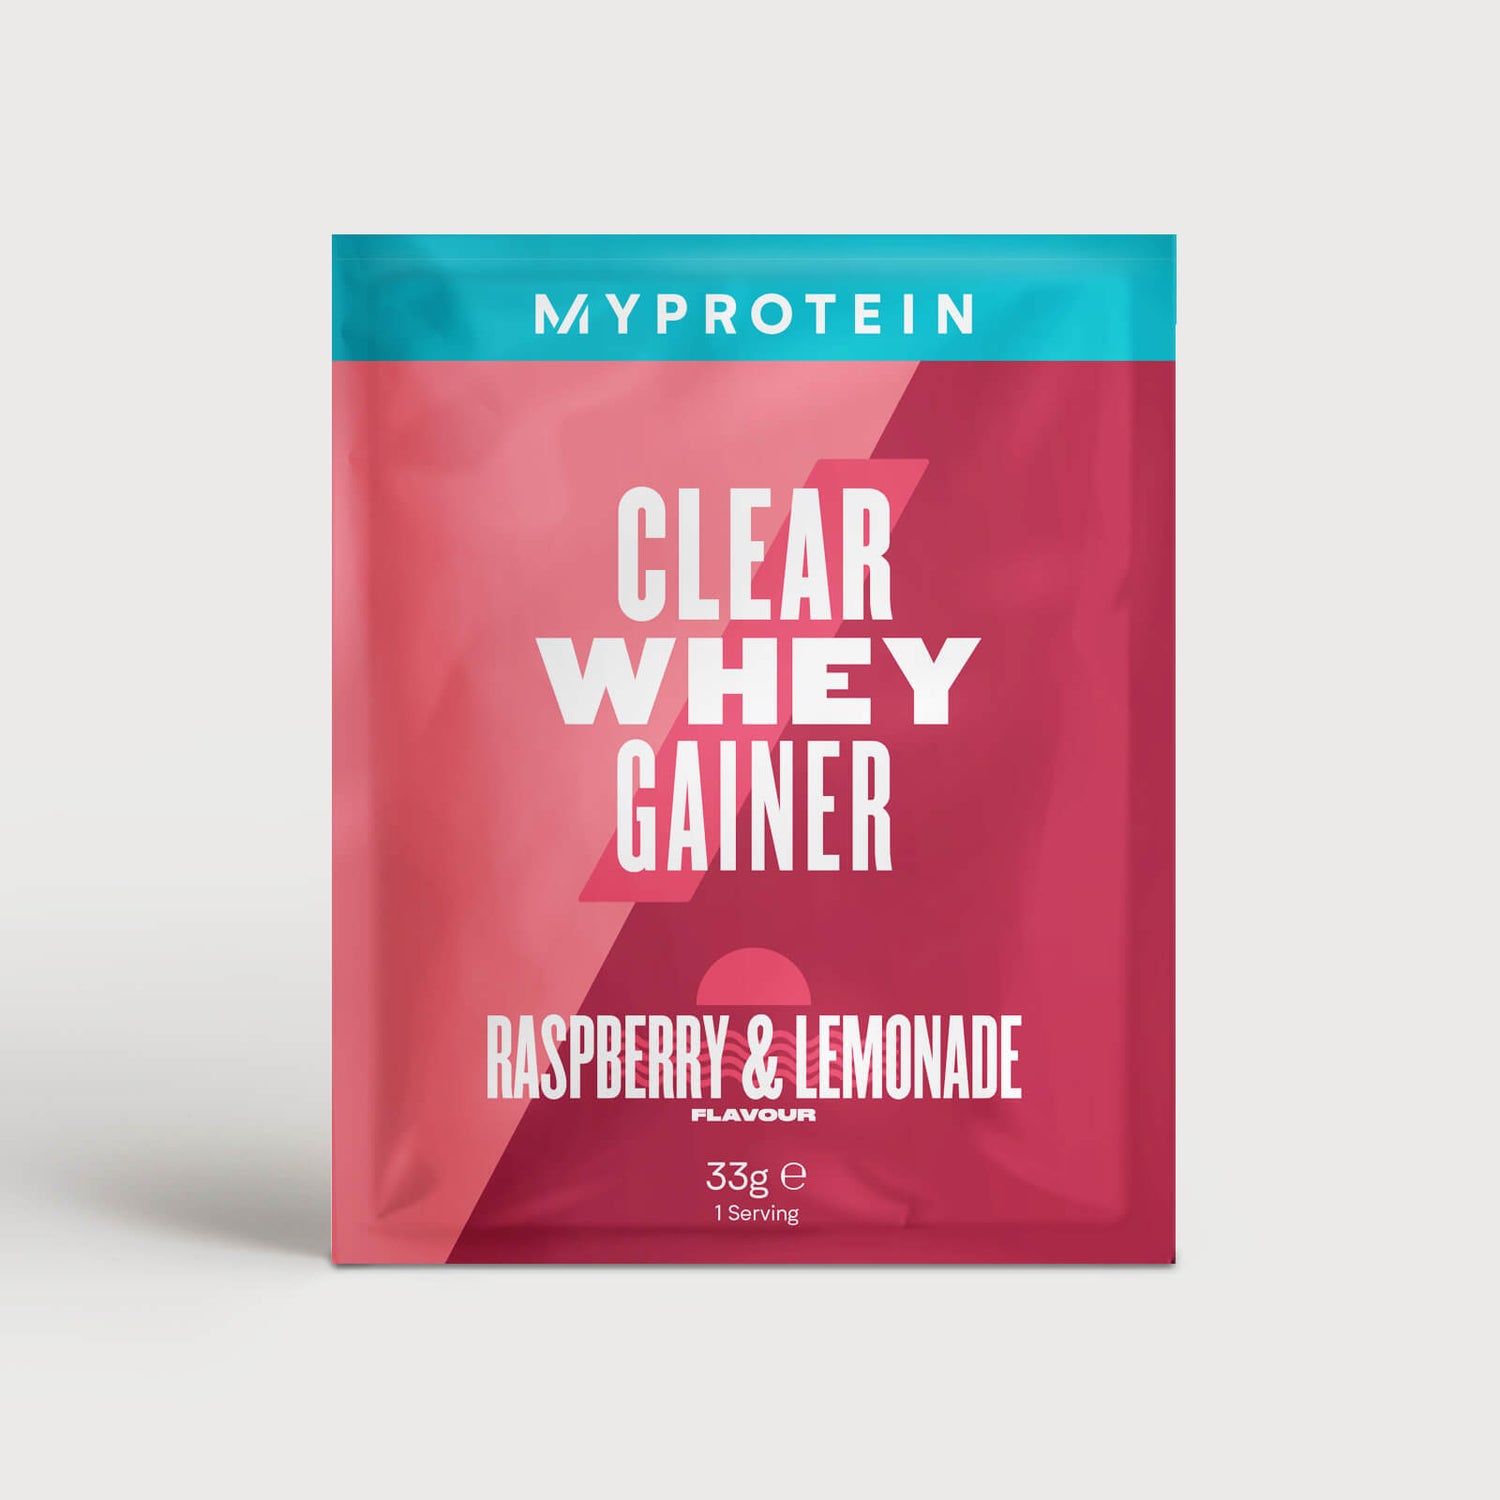 Clear Whey Gainer (Sample) - 1servings - Raspberry Lemonade